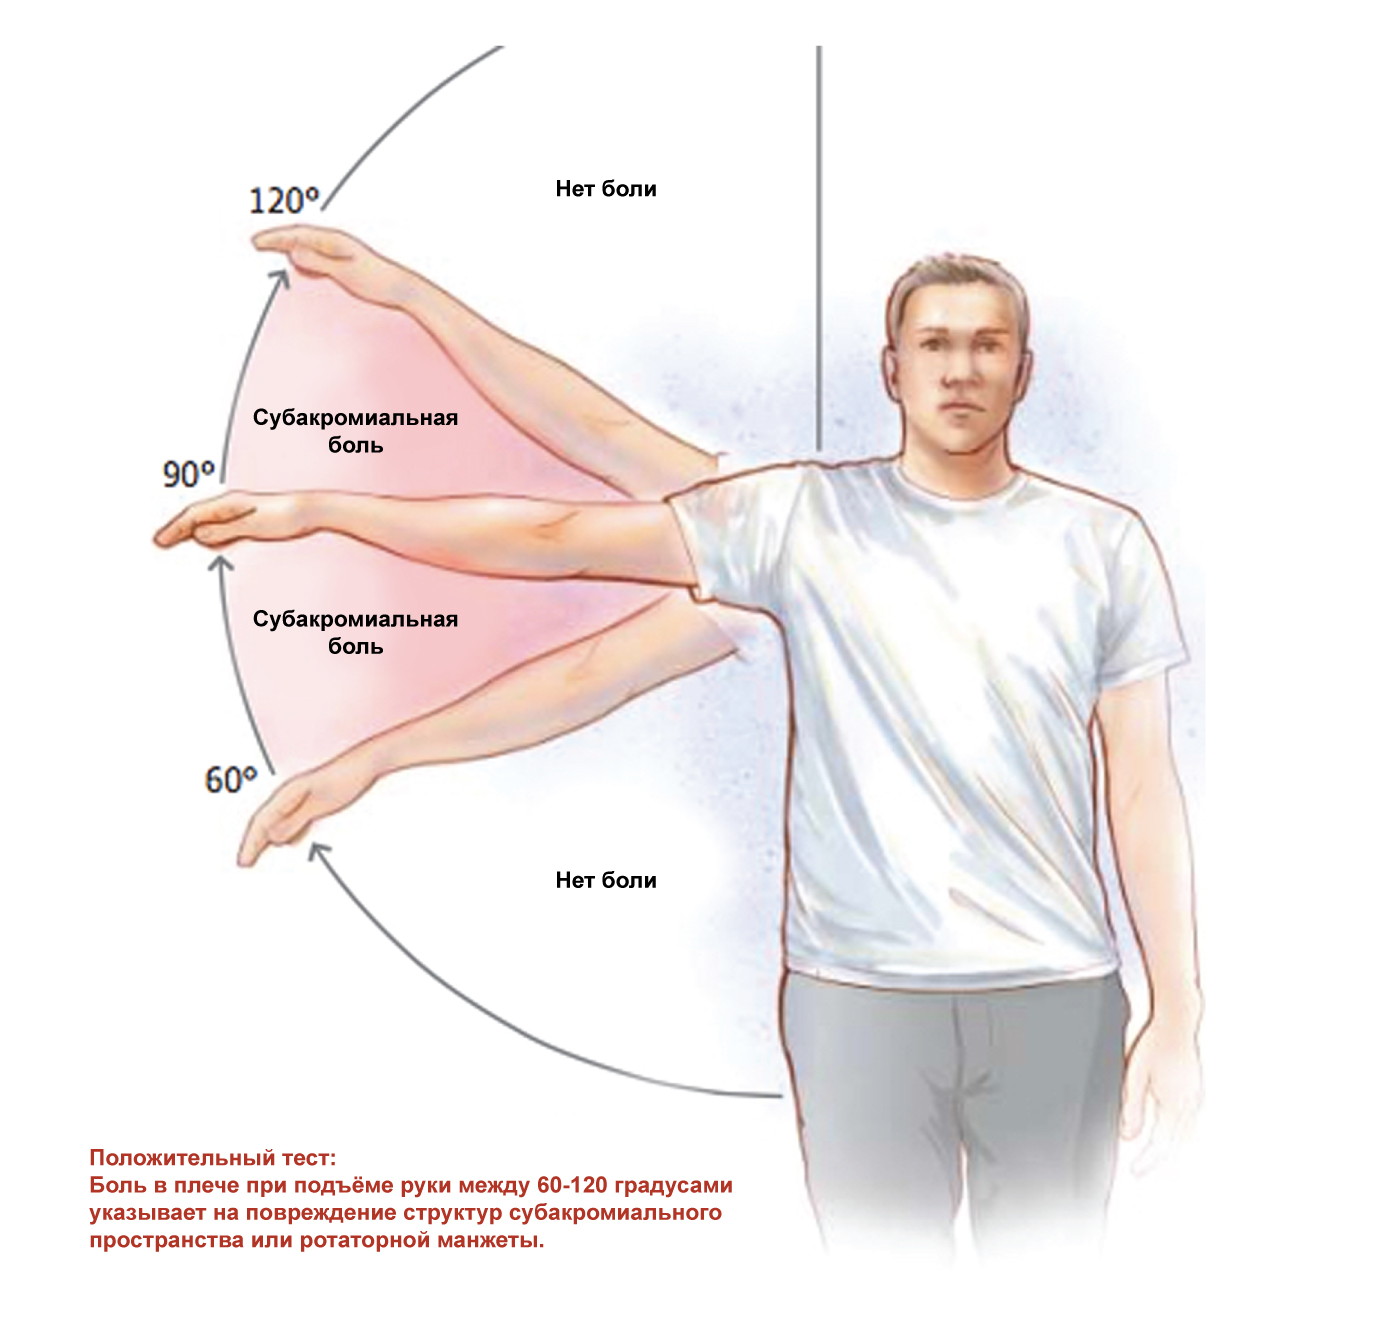 Ночью болит правая рука. Субакромиальный синдром плечевого сустава ЛФК. ЛФК при импиджмент синдром правого плечевого сустава. Субакромиальный болевой синдром. Лечебная физкультура при импинджмент синдроме плечевого сустава.